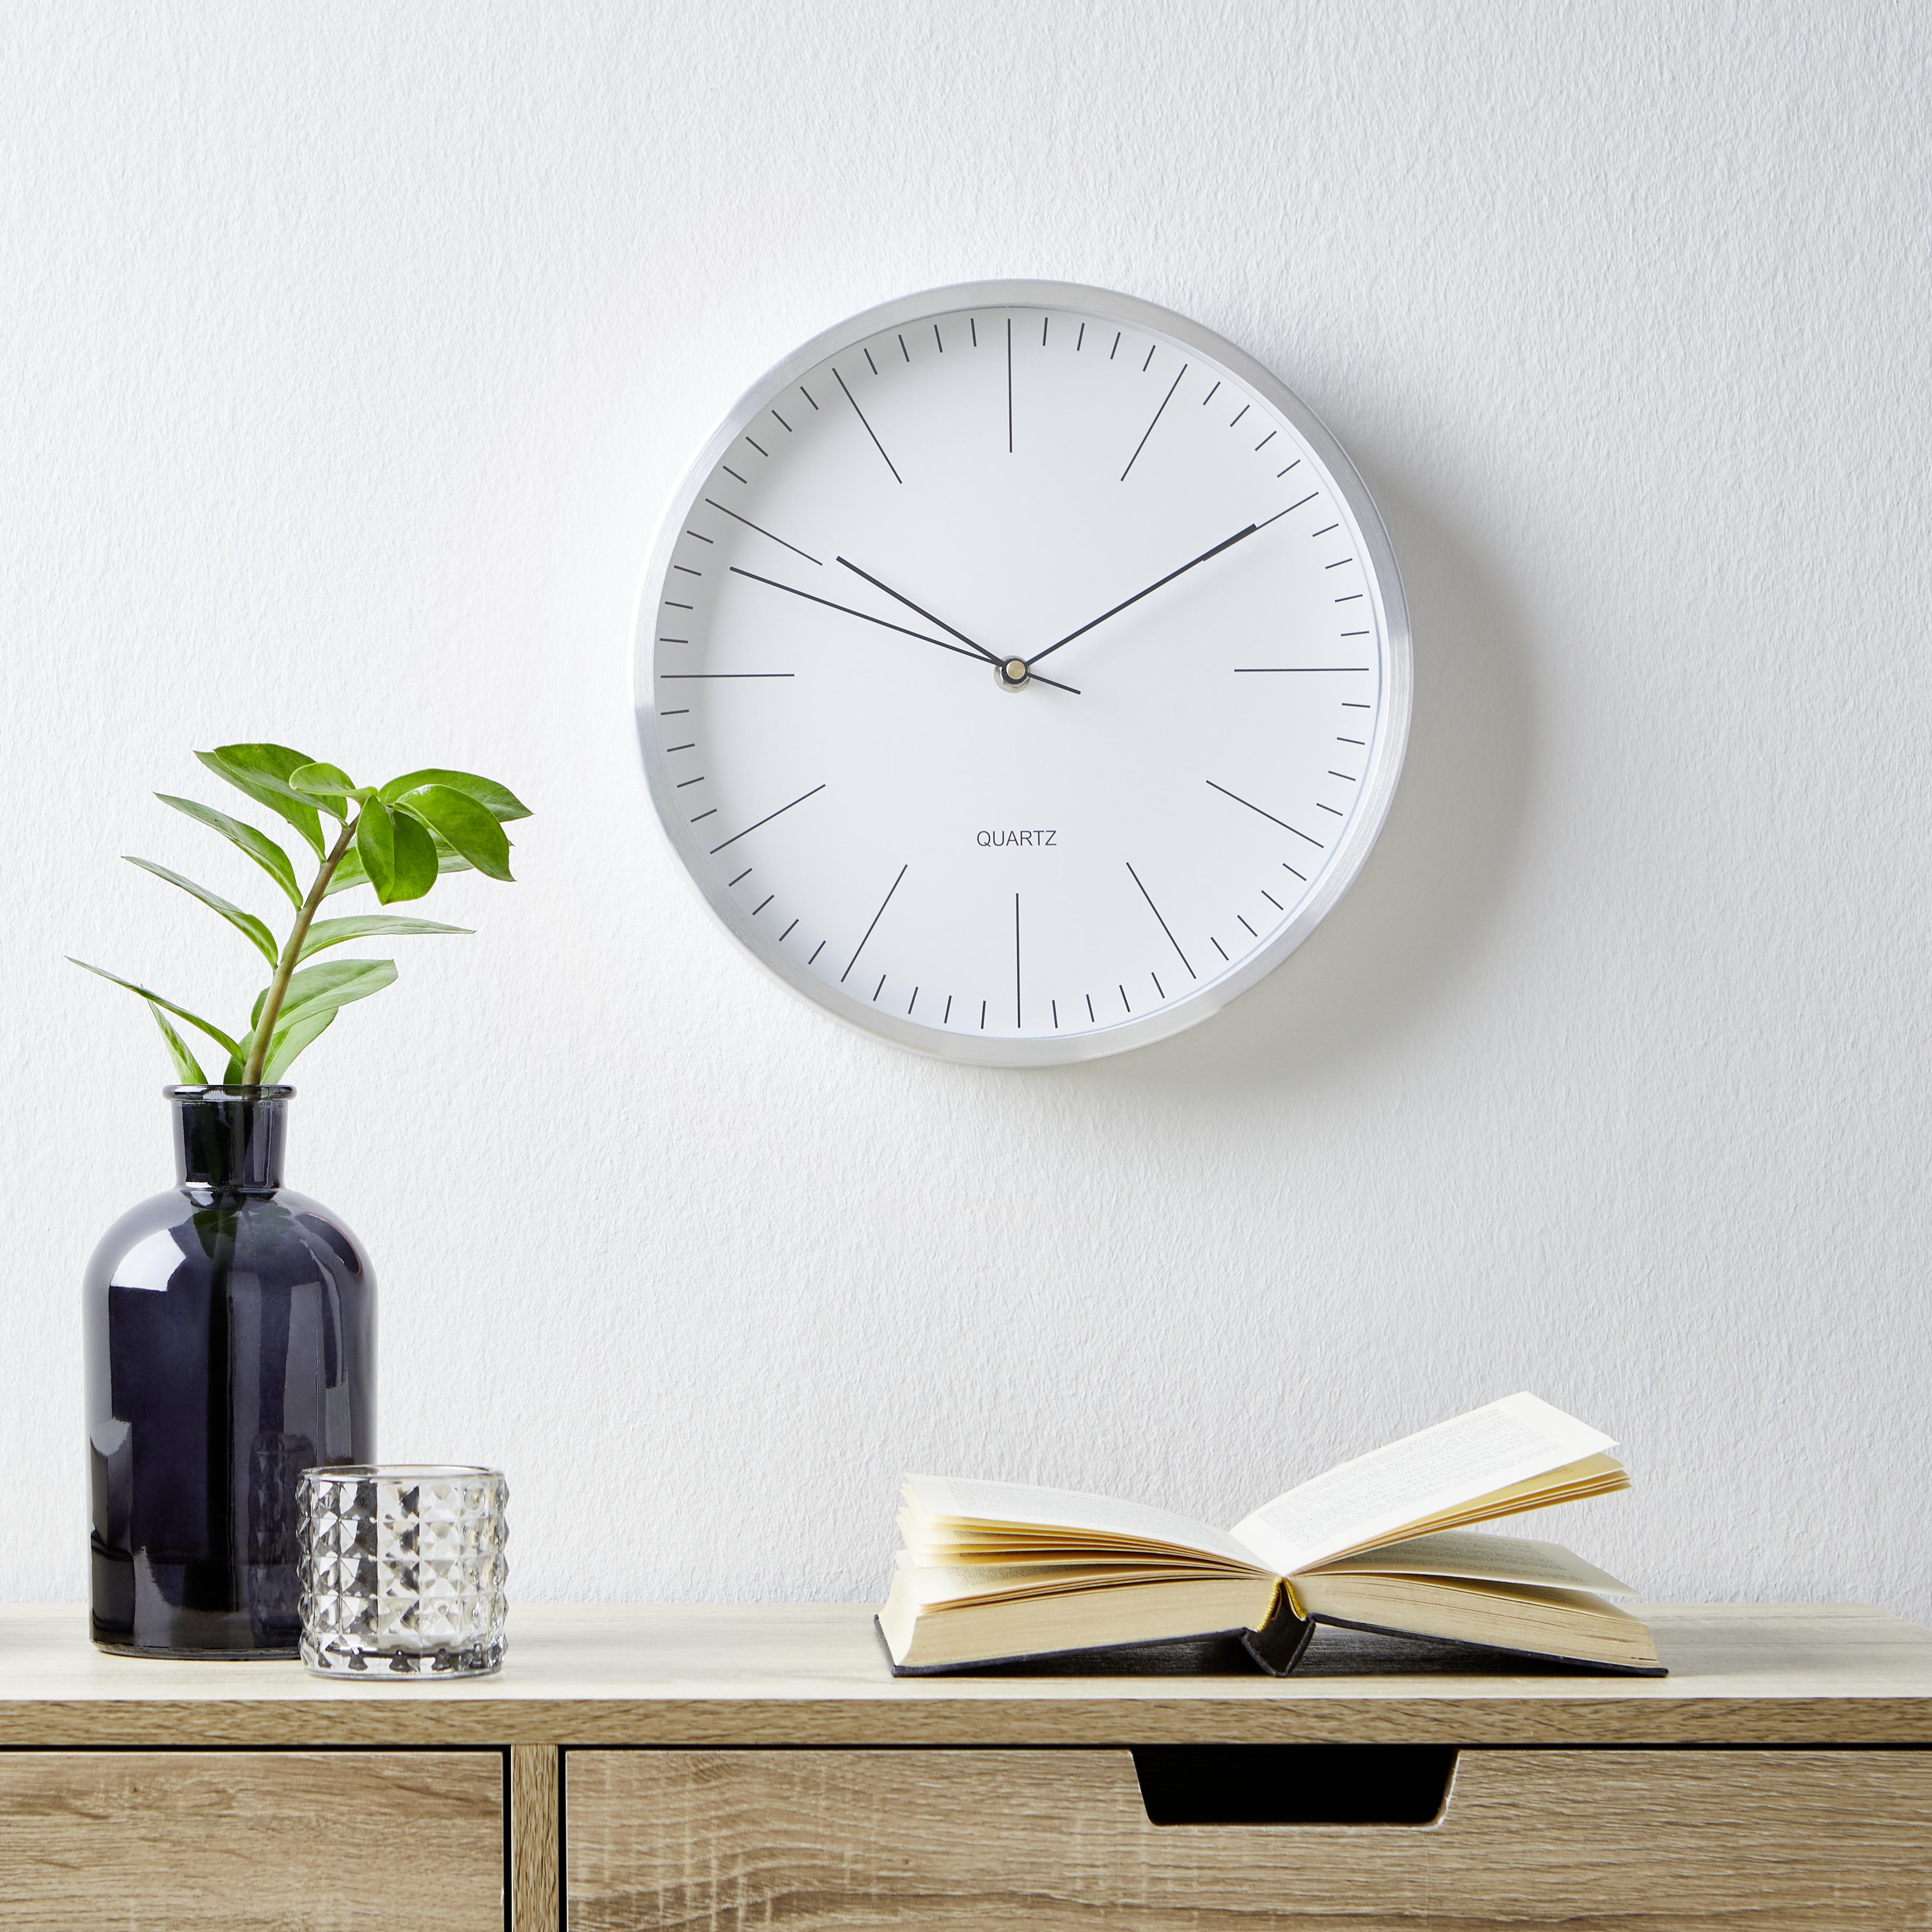 Uhr Rena in Silber/ Weiss ca.Ø29,6cm - Silberfarben/Weiß, MODERN, Glas/Metall (29,6cm) - Bessagi Home